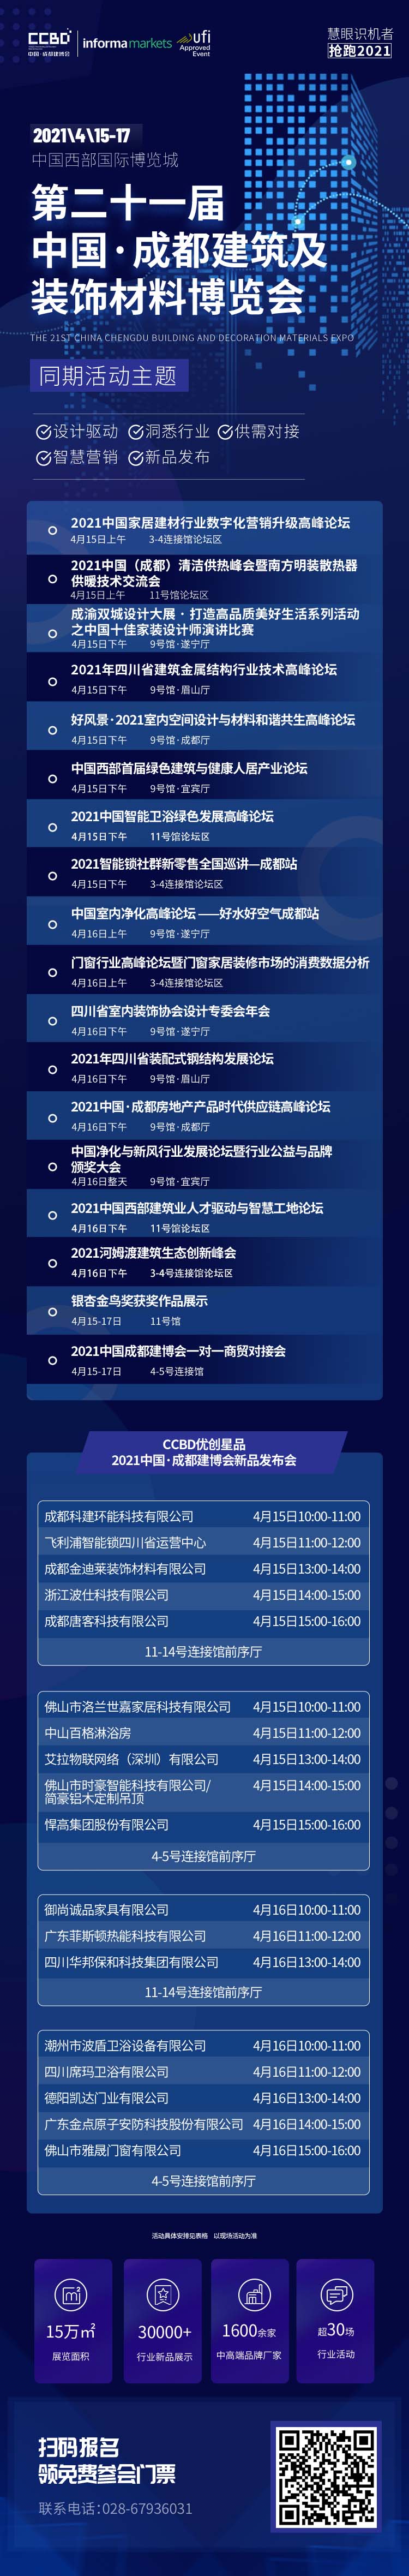 30+活动，五大主题，众多大咖齐聚2021中国成都建博会！(图1)